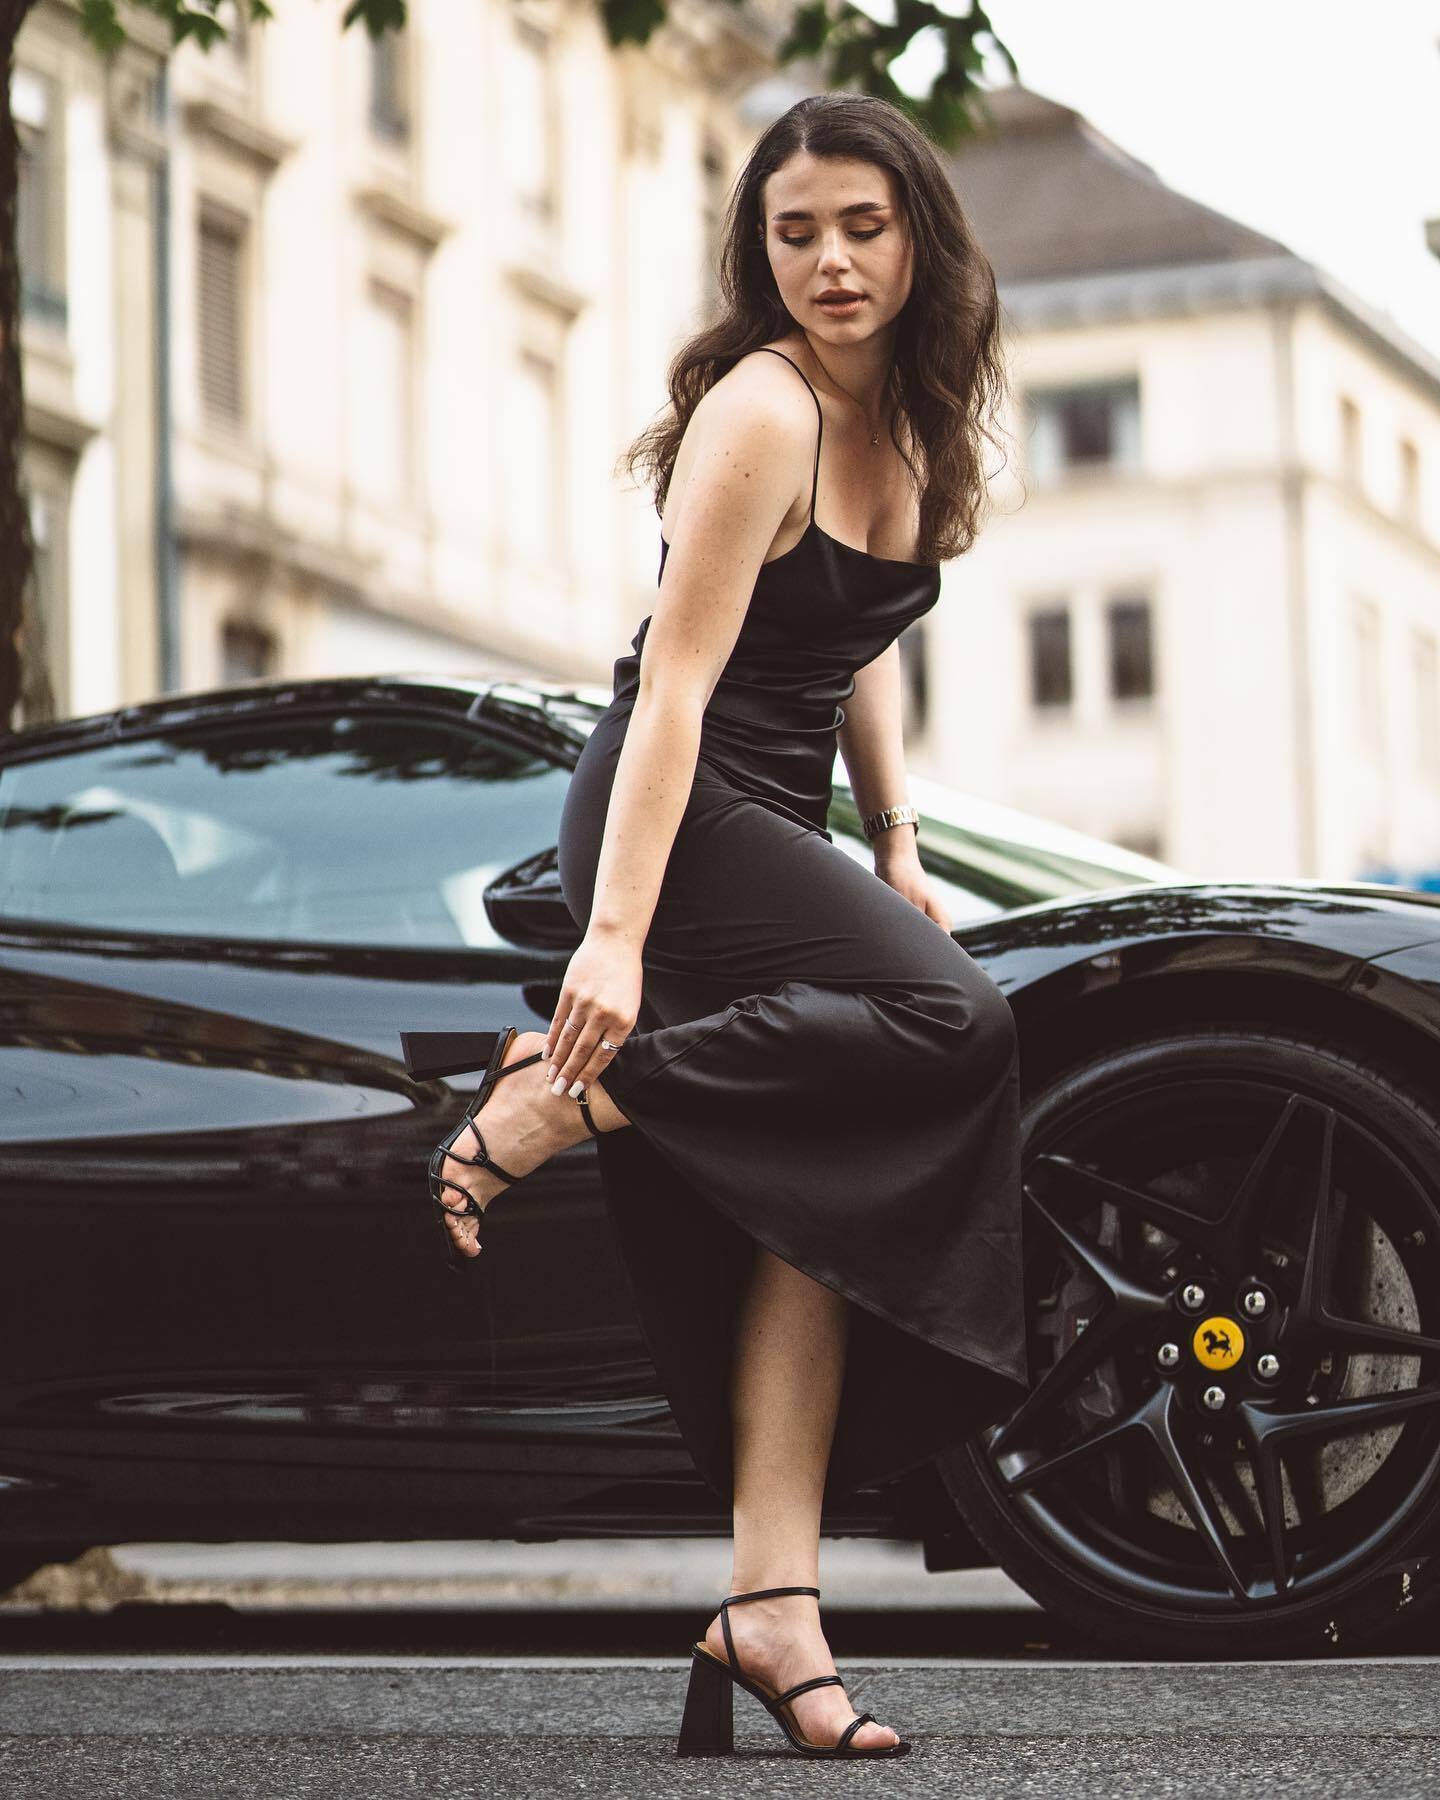 Украинская модель Анна Краевская разбилась на Ferrari в Италии: что известно о страшном ДТП